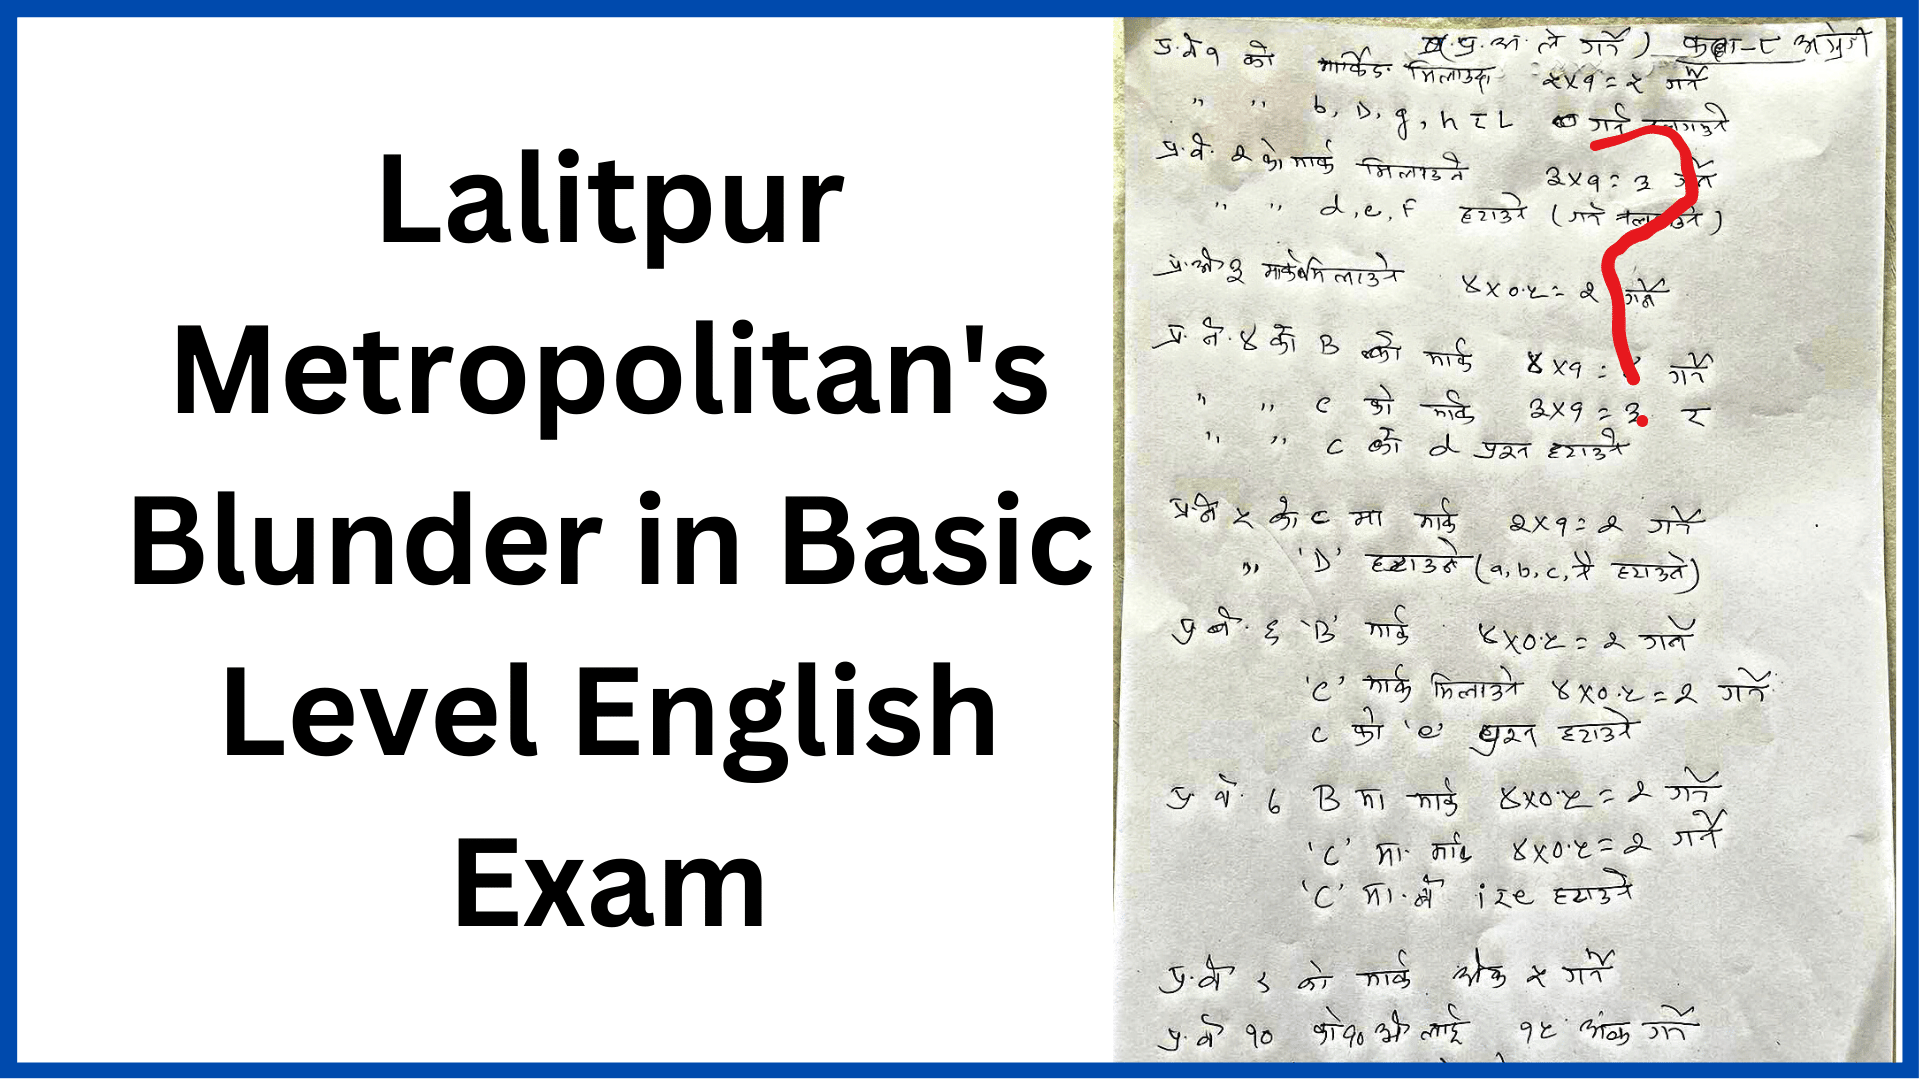 Lalitpur Metropolitan's Blunder in Basic Level English Exam